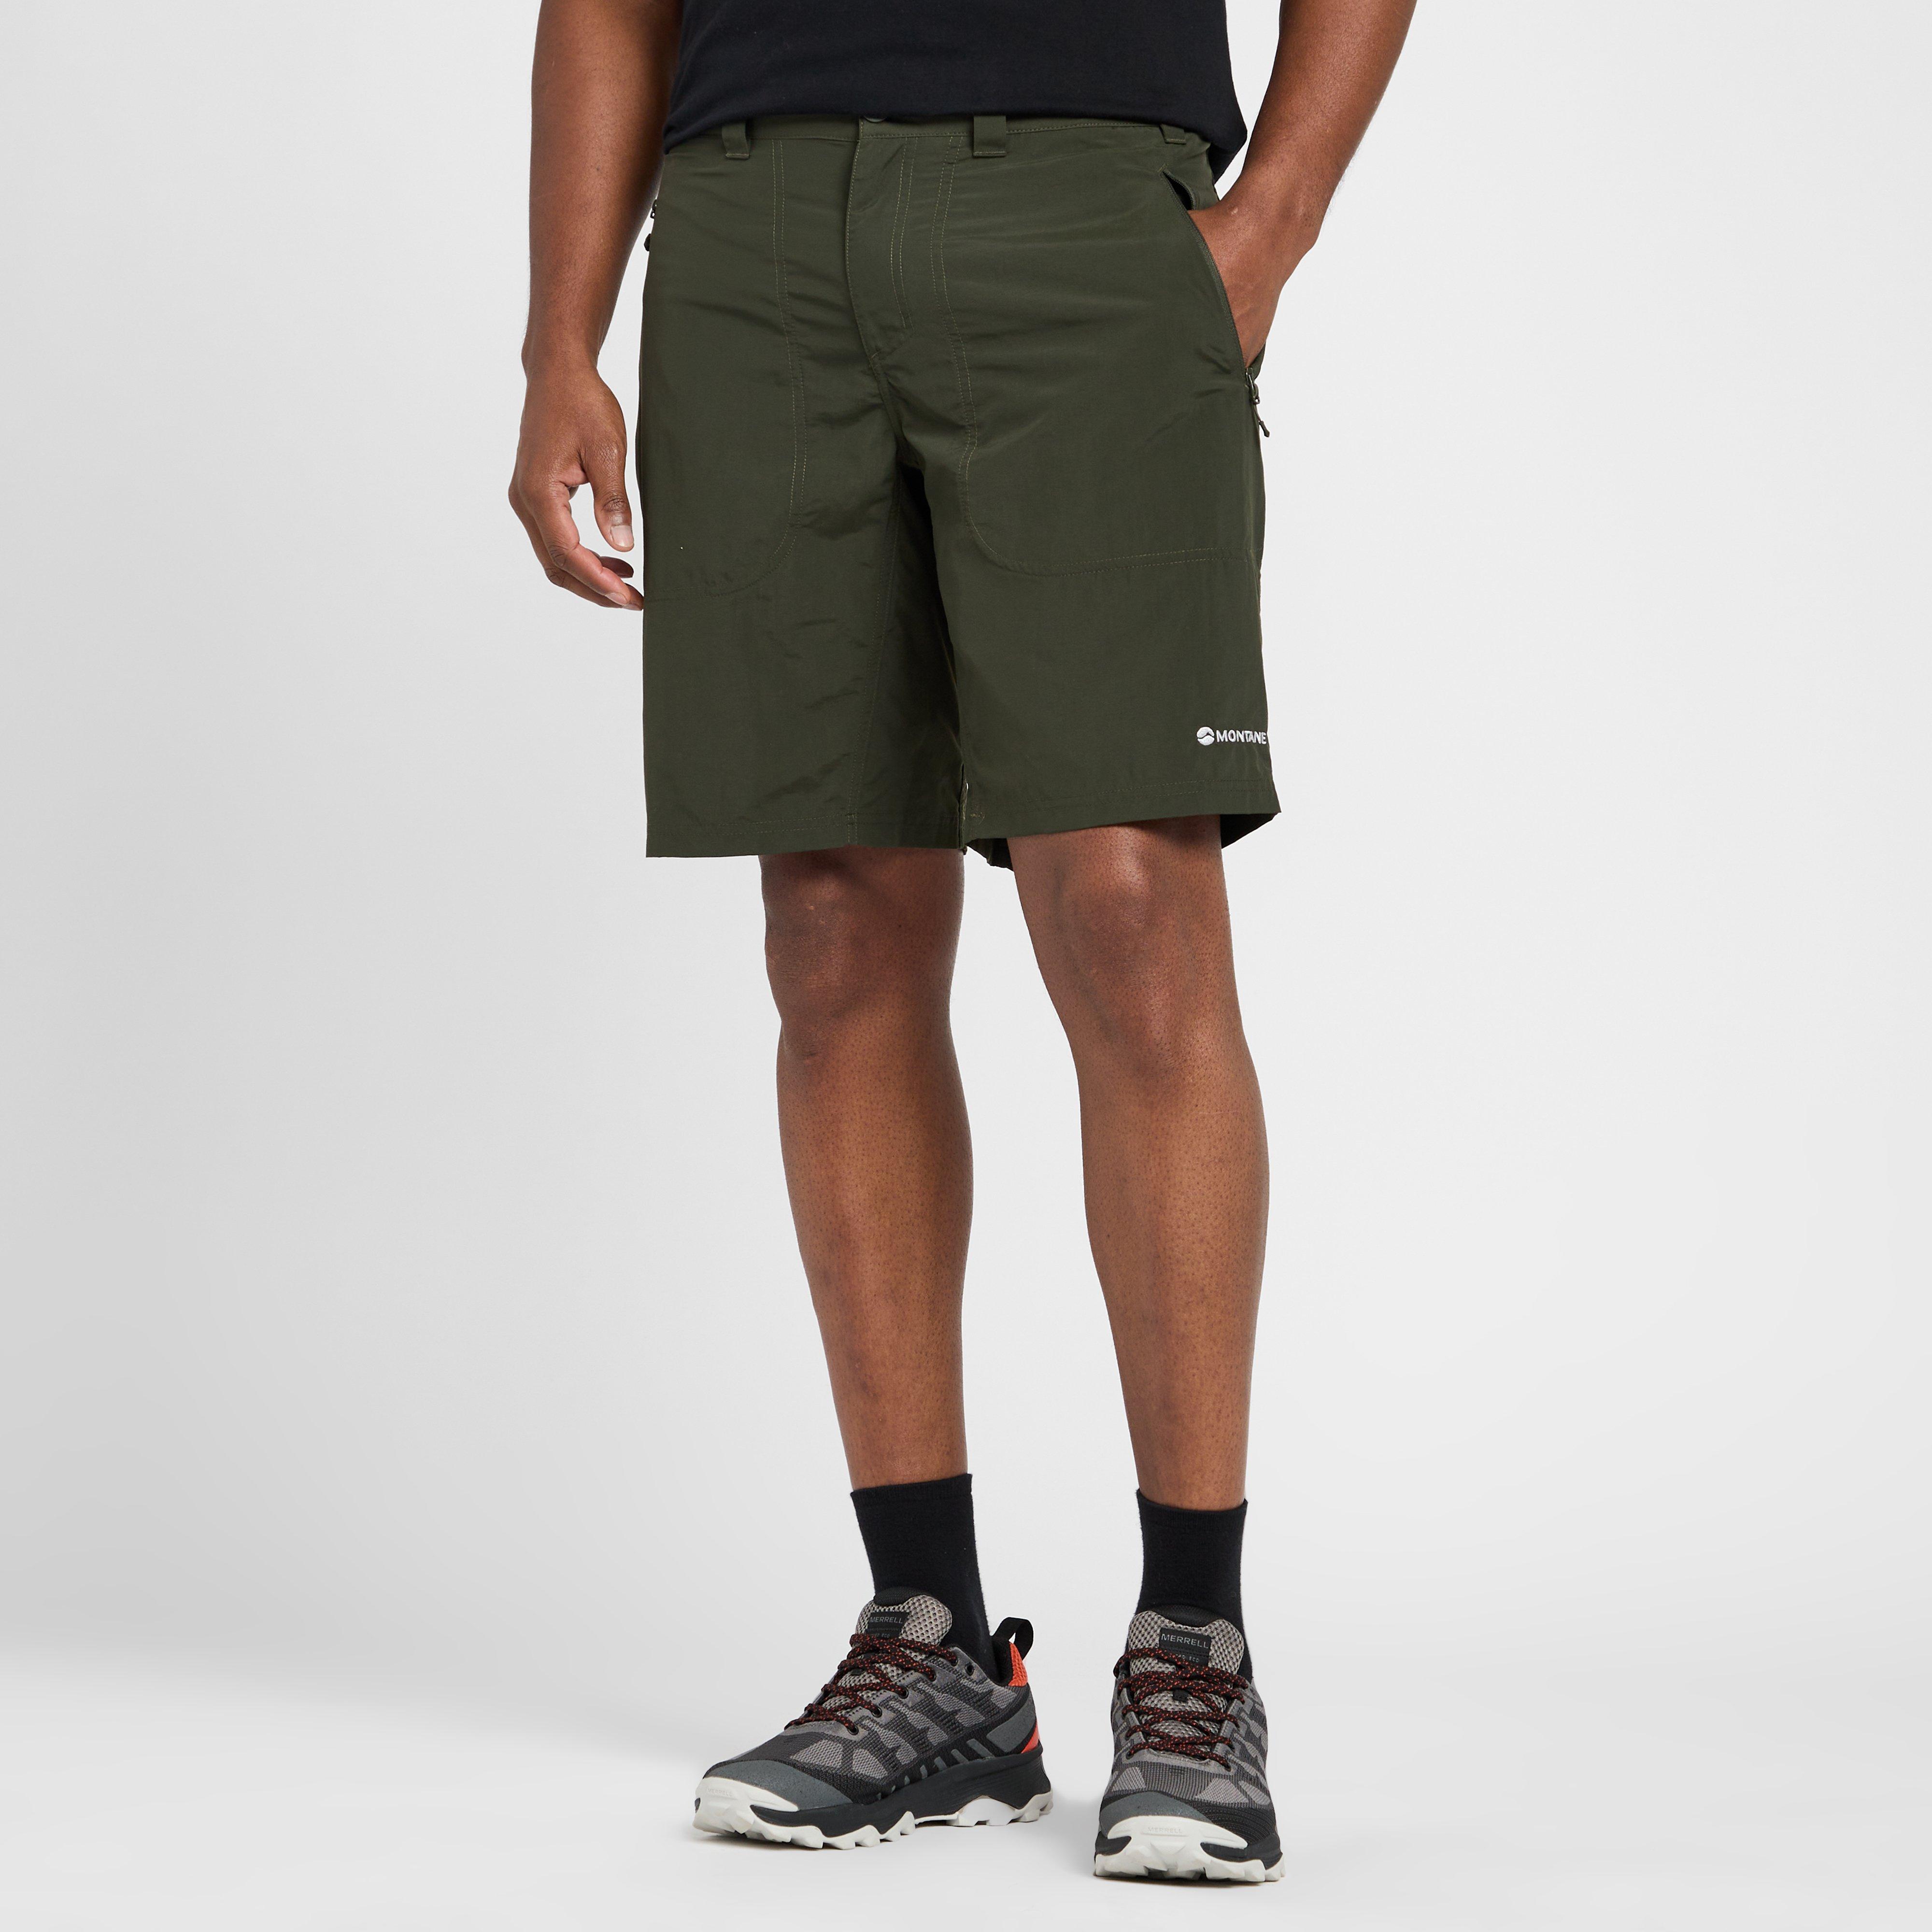 montane men's terra shorts - grn, grn